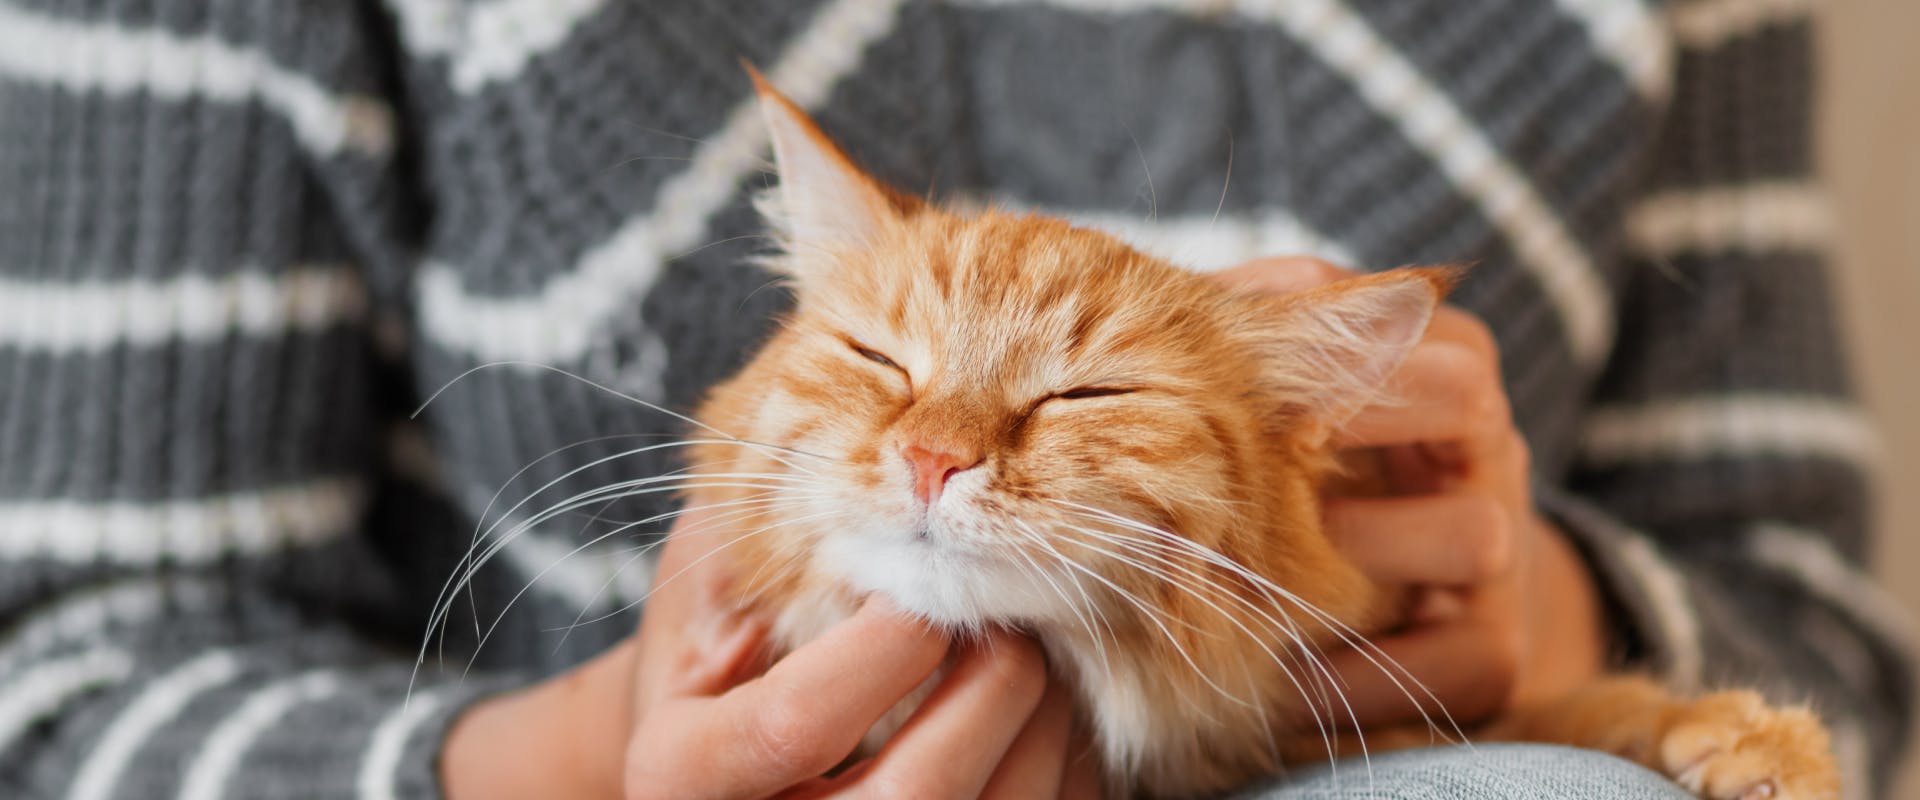 A cat enjoys a chin scratch.